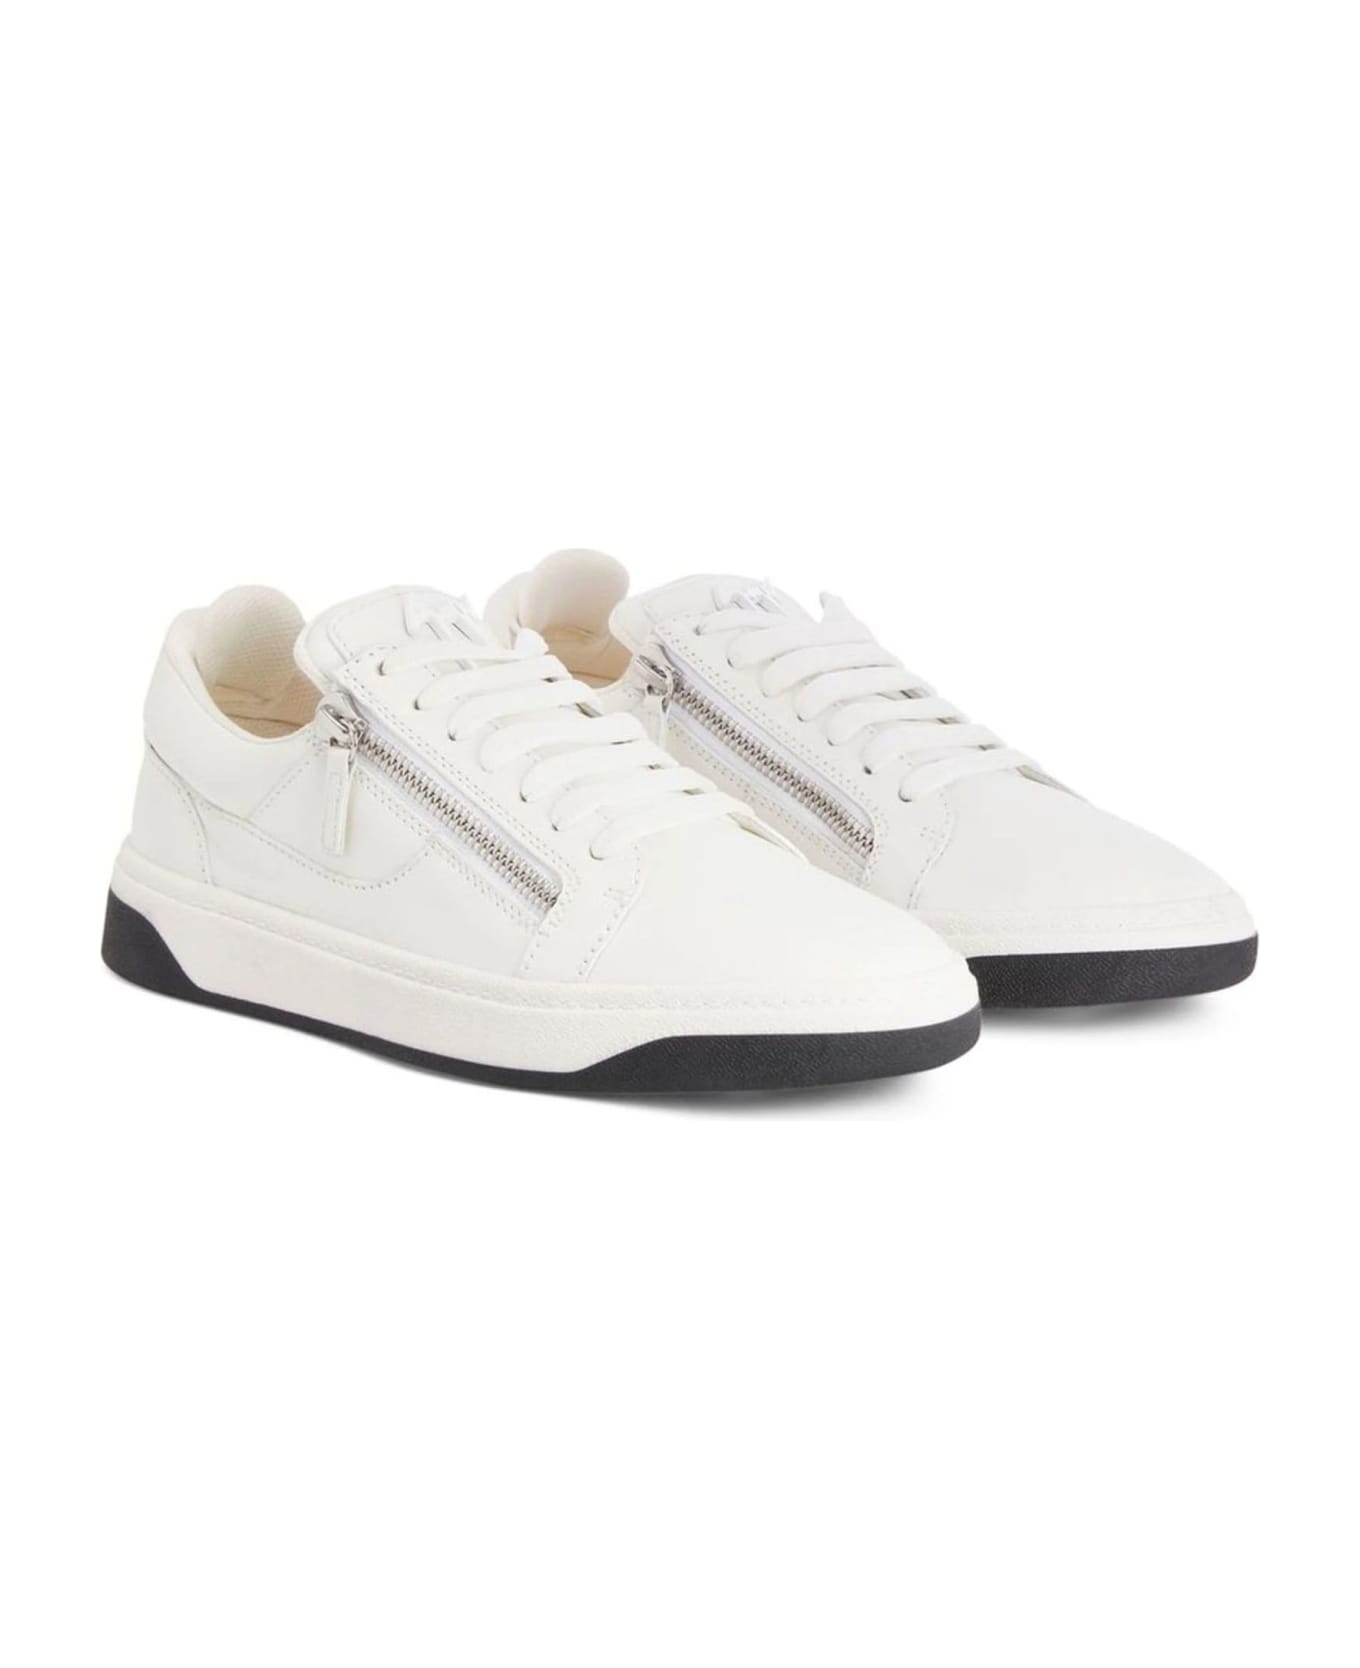 Giuseppe Zanotti White Leather Sneaker - White